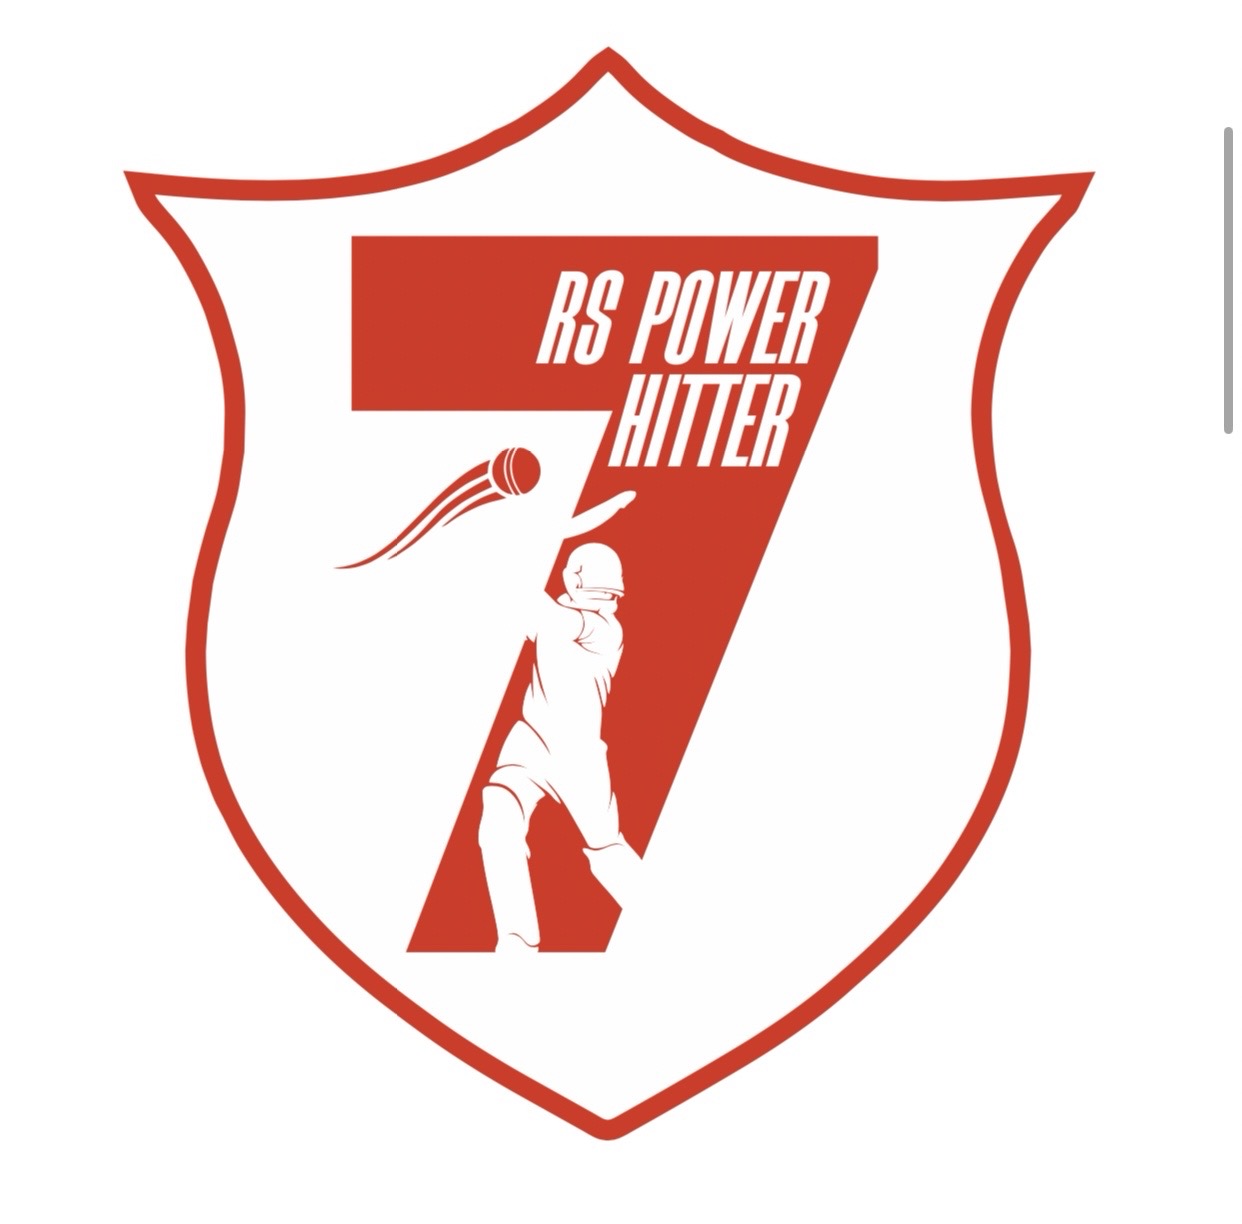 RS Power hitter